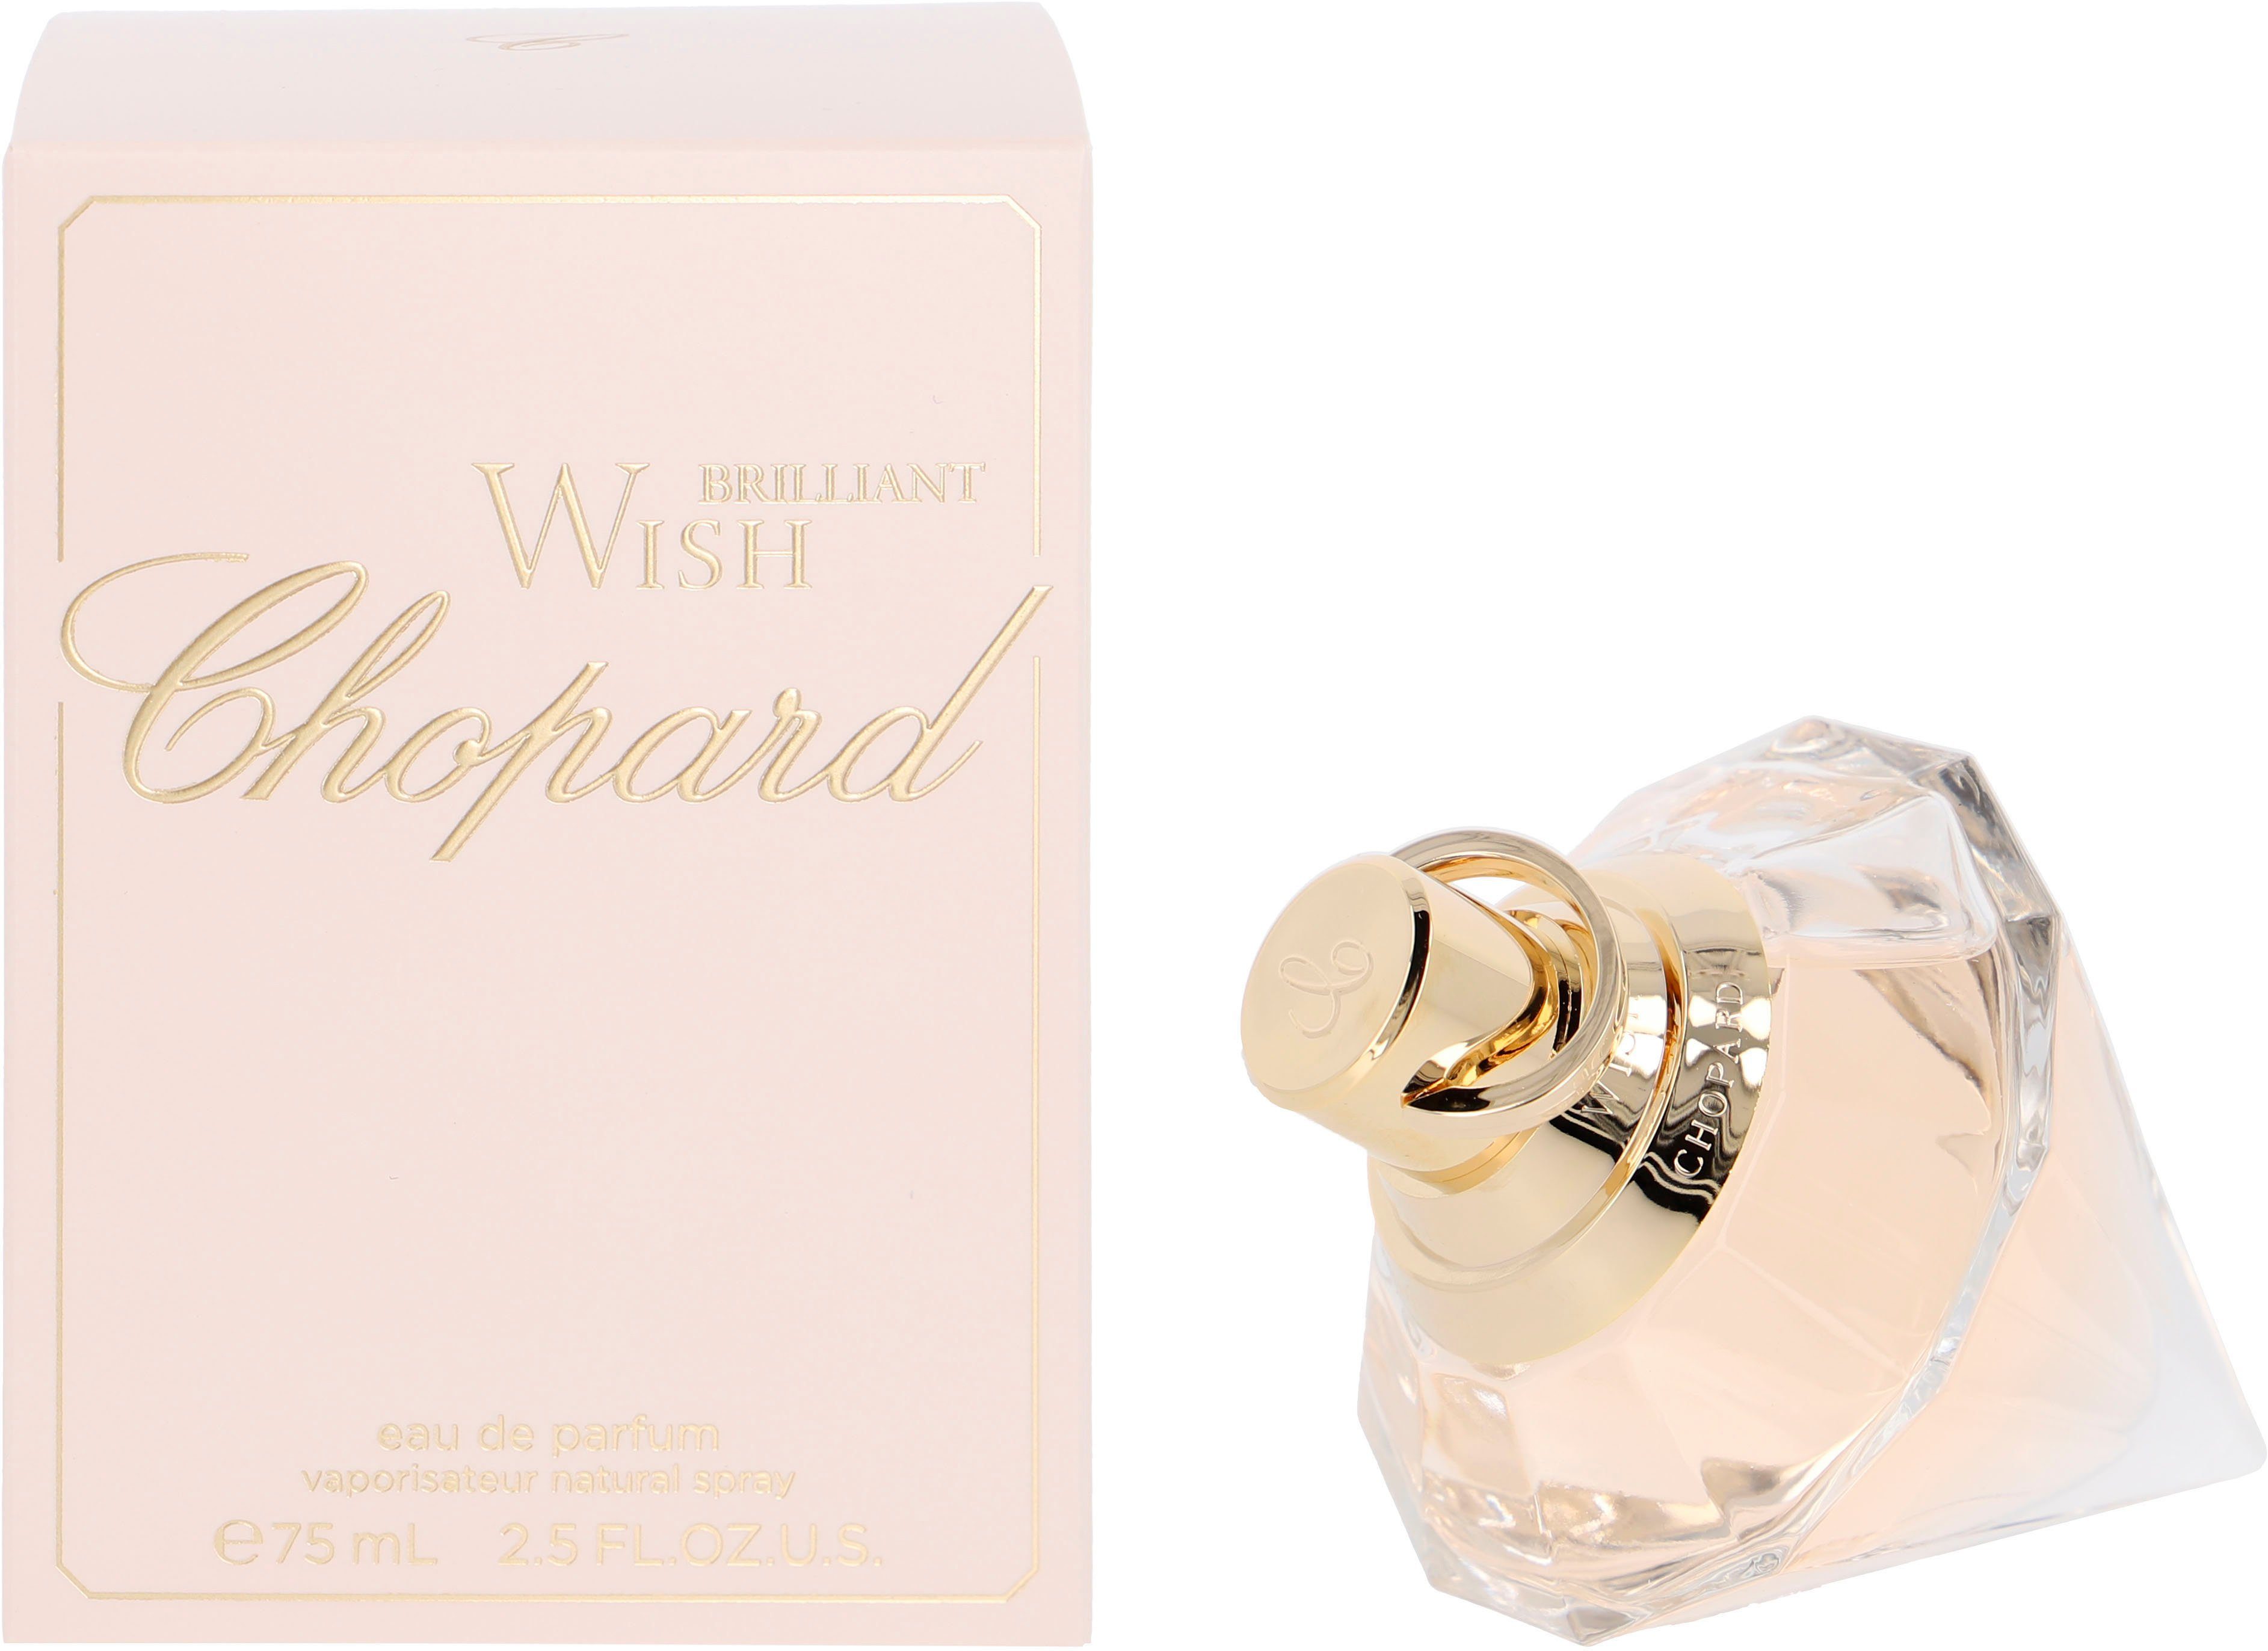 Parfum Wish de Chopard Eau Brilliant